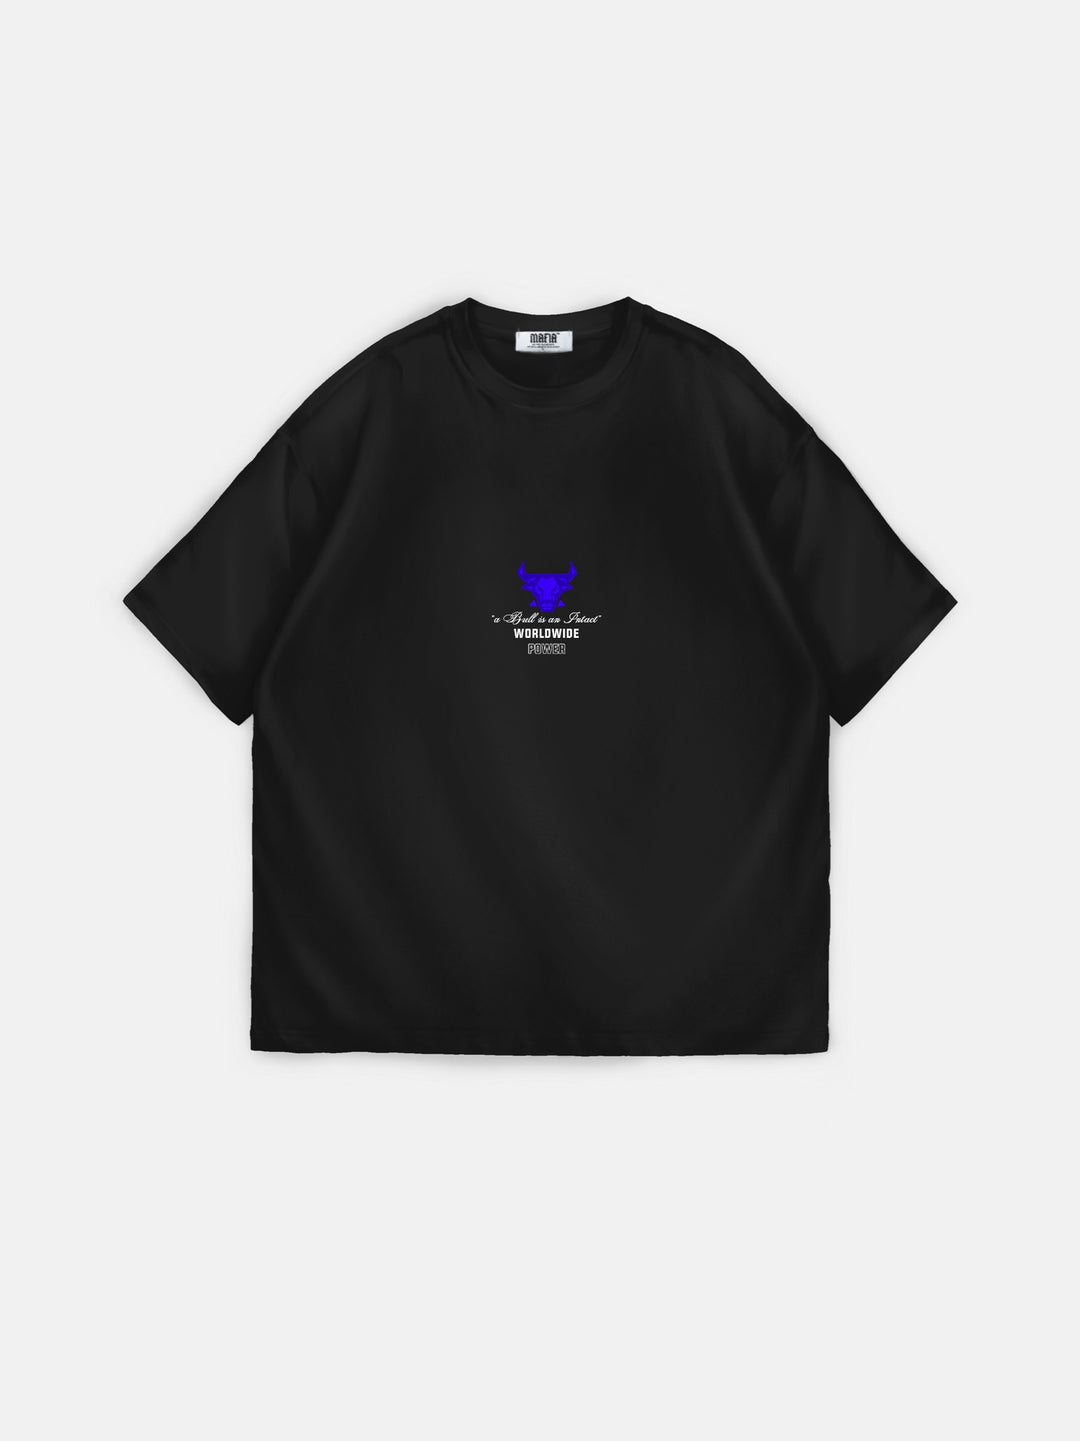 Oversize Bull Worldwide T-shirt - Black and Saks